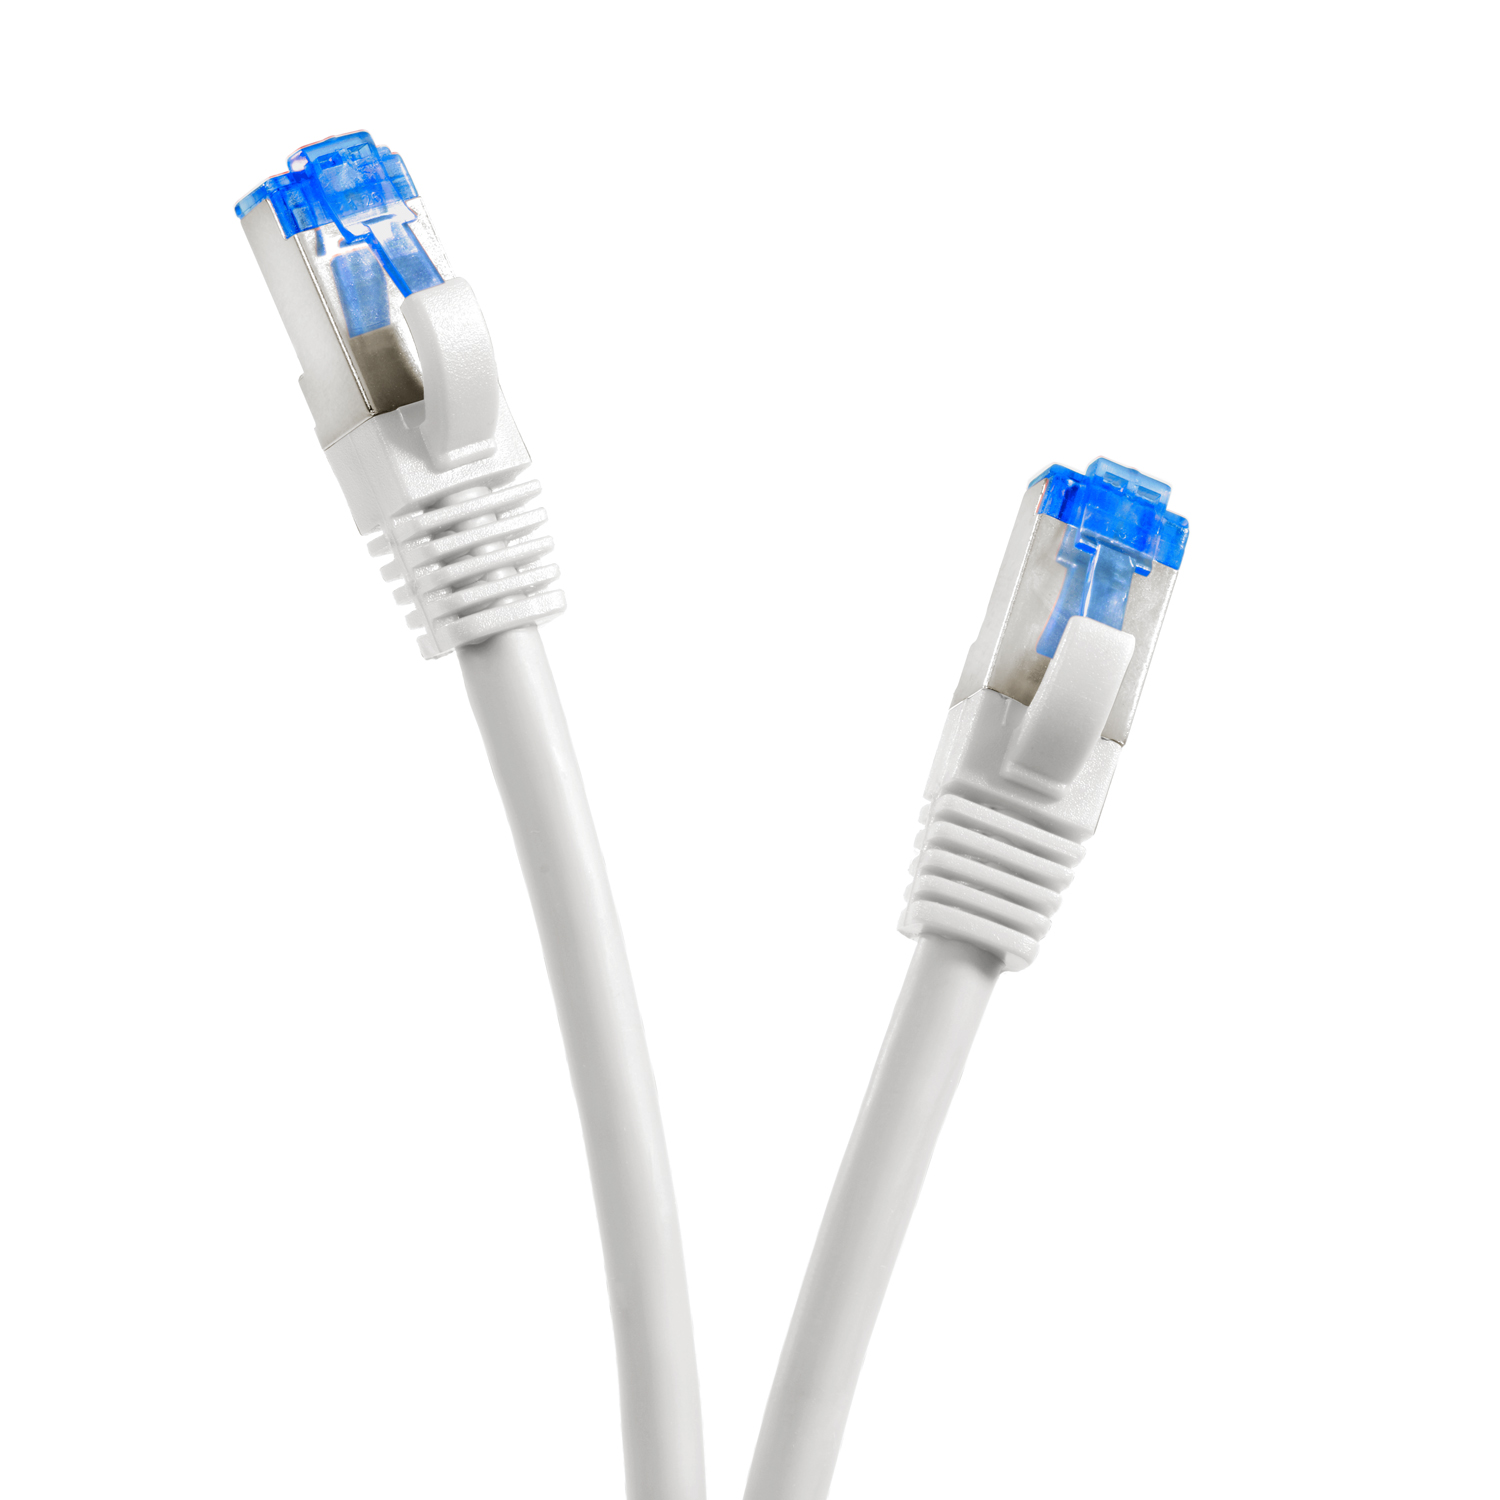 TPFNET 10m Patchkabel / Netzwerkkabel m weiß, 10 Netzwerkkabel, S/FTP 10GBit